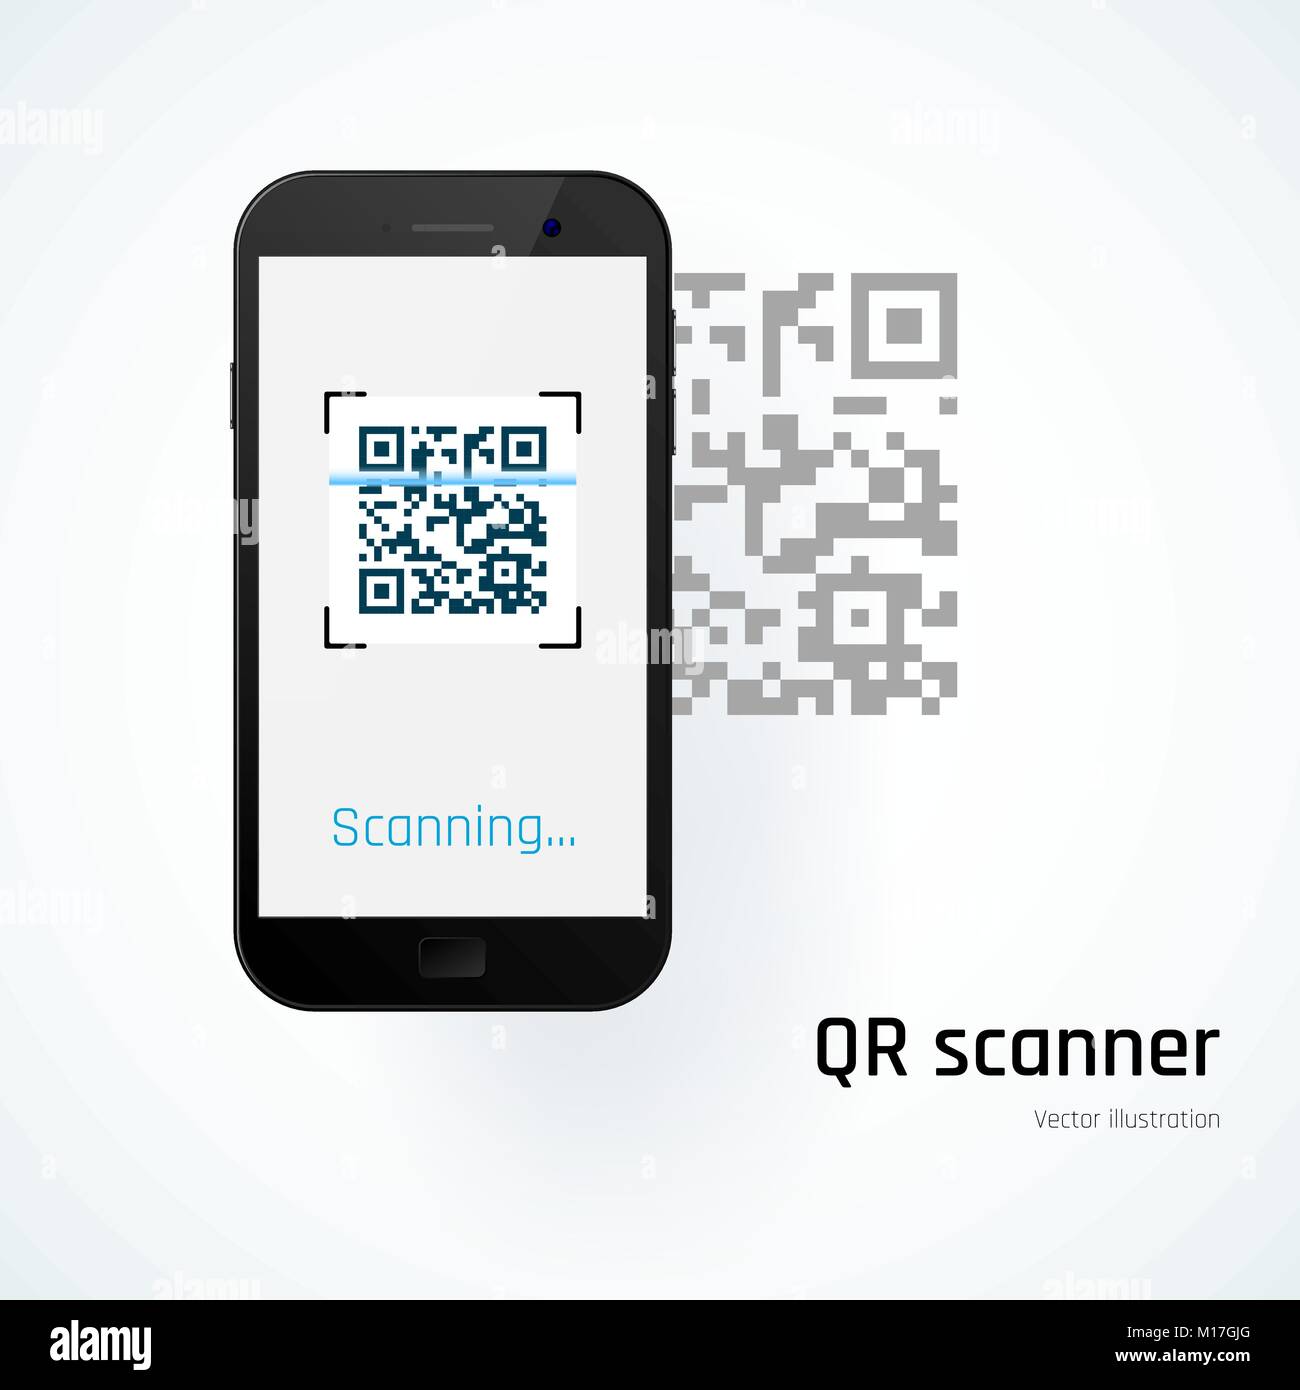 QR scanner. Mobile scans QR code. Vector illustration Stock Vector